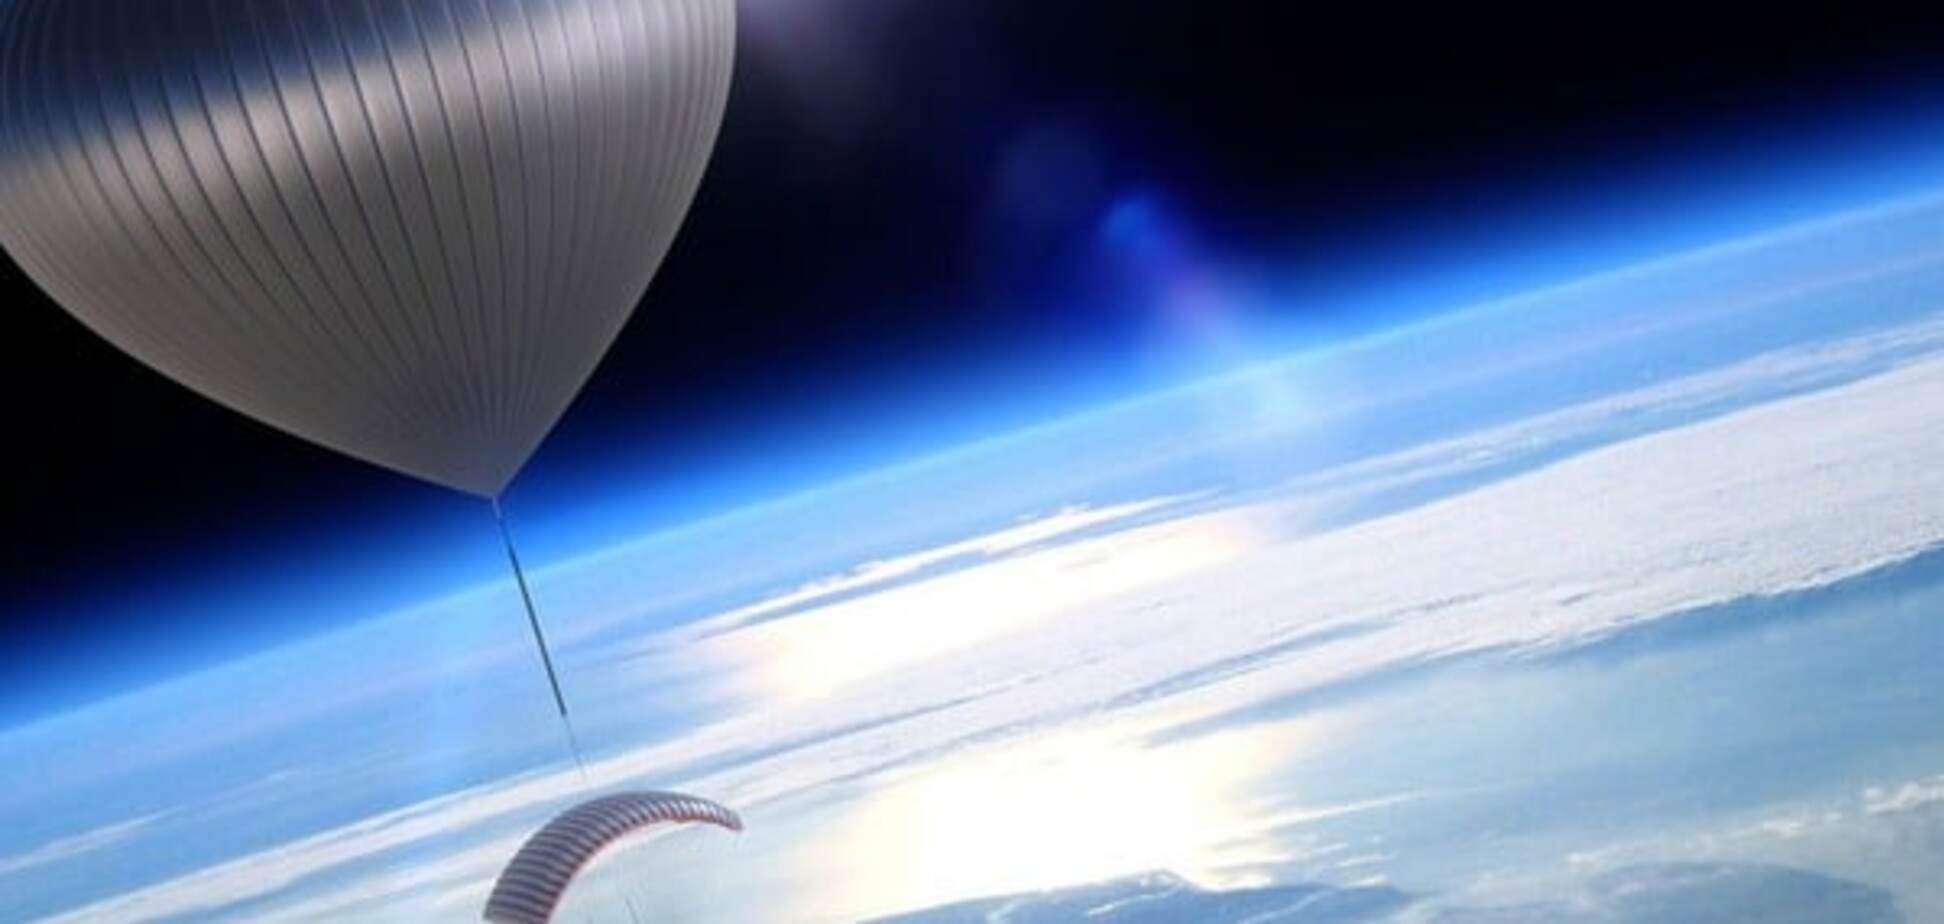 В космос можно будет отправиться на воздушном шаре